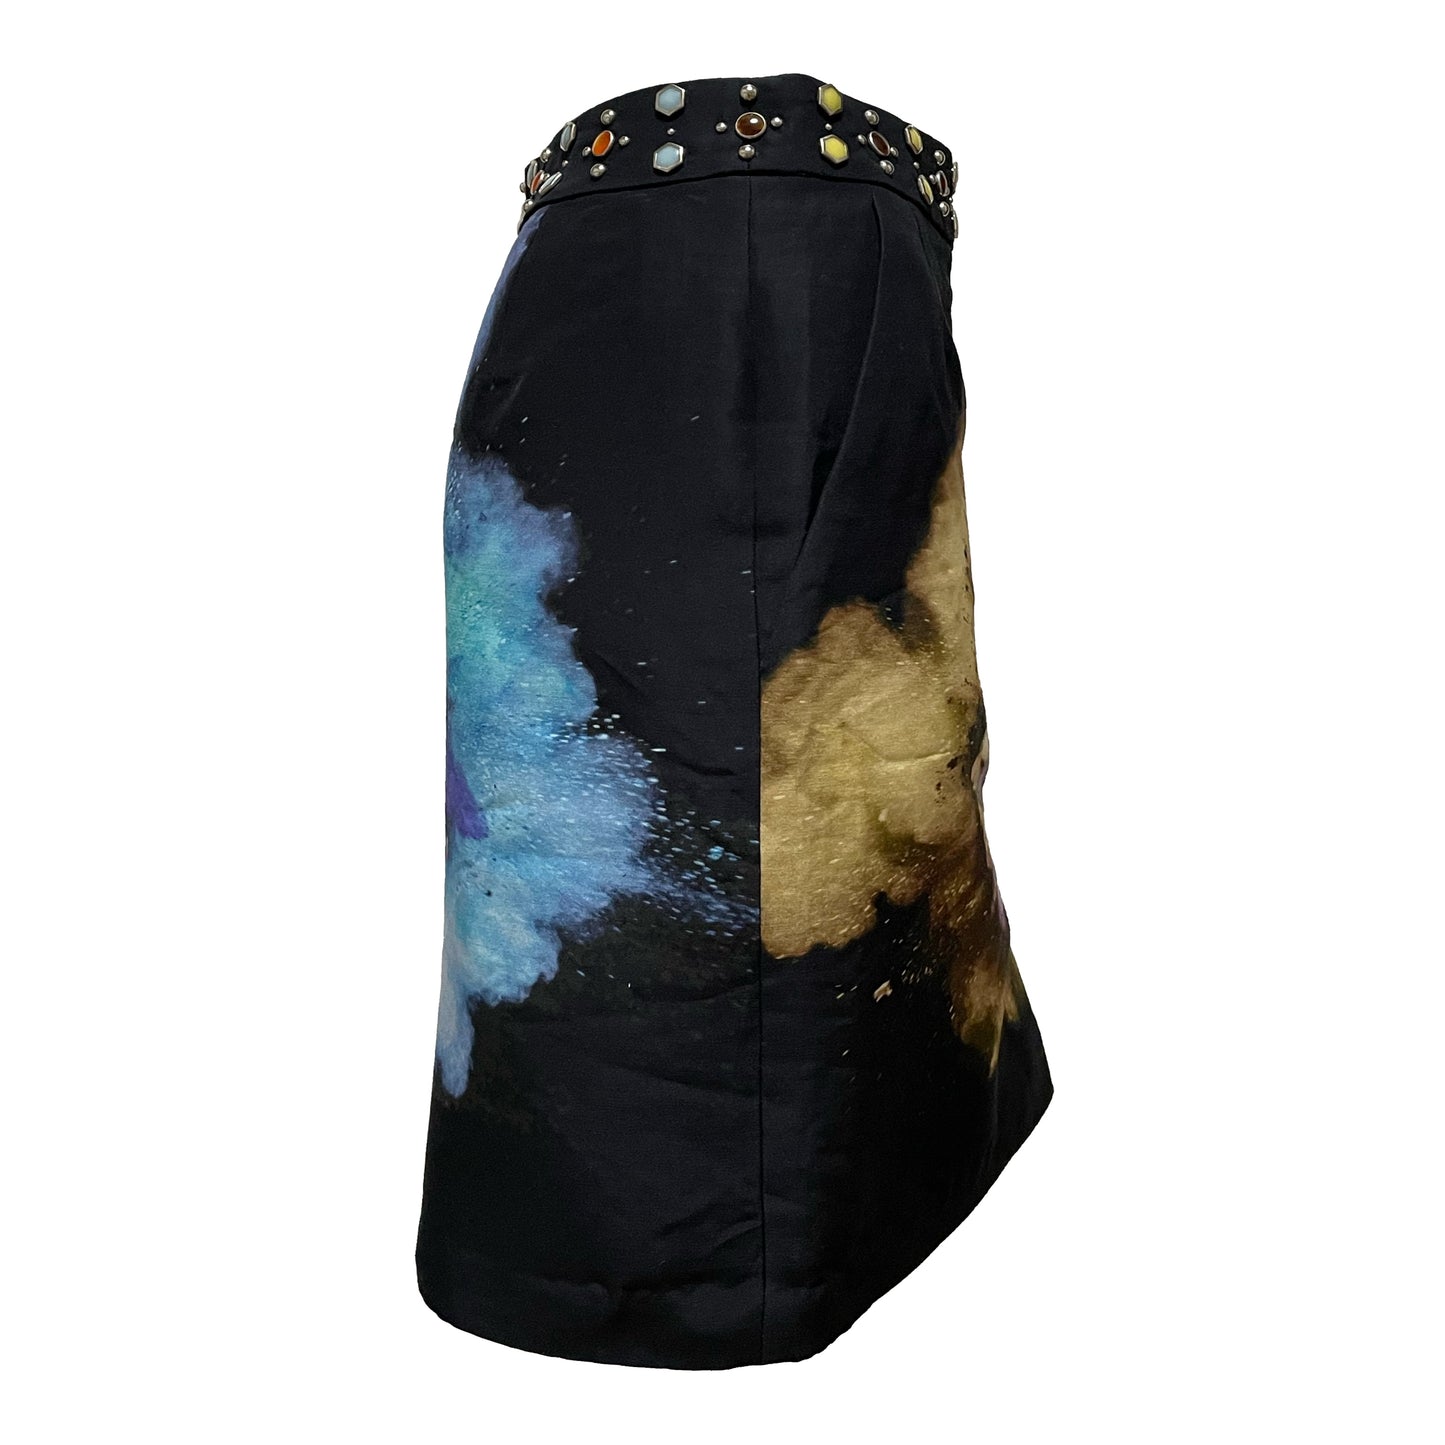 UNDERCOVER Spring Summer 2016 "Greatest" Flower Print Studs Skirt